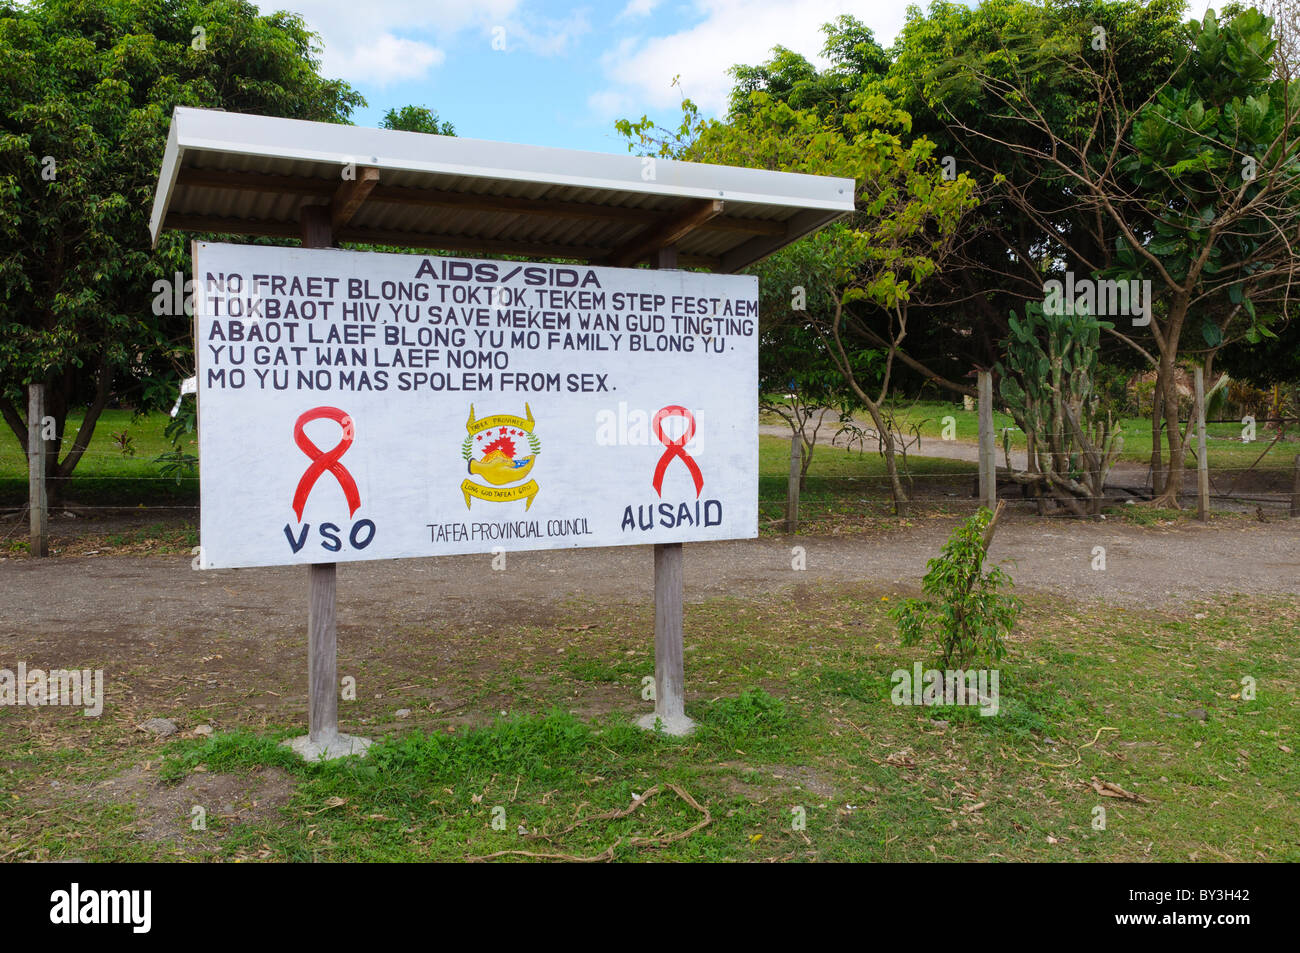 Dipinte a mano e firmare: sanità pubblica campagna segno di avvertimento su AIDS e malattie sessualmente trasmissibili, parte di un aiuto d'oltremare, progetto in Vanutatu, South Pacific. Bislama creolo. Foto Stock